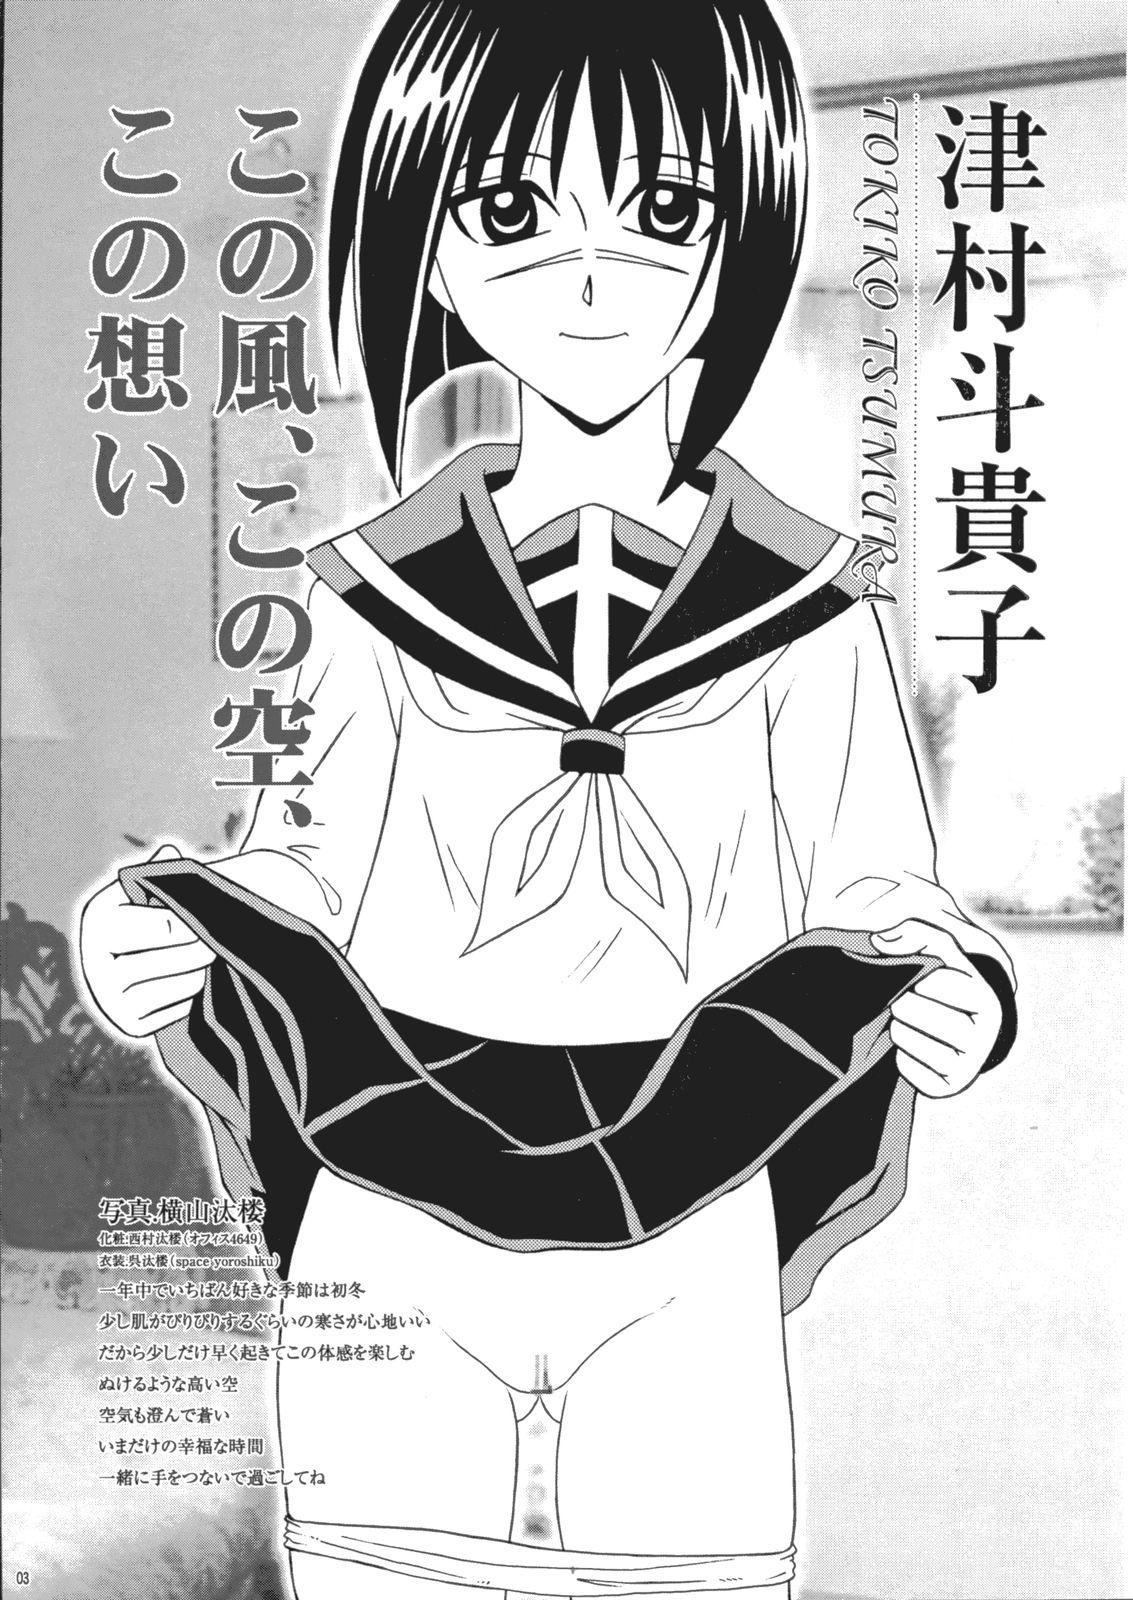 Mamada Saku-chan Kurabu Vol.03 - Naruto One piece Ichigo 100 Is Hikaru no go Hot Girls Fucking - Page 2